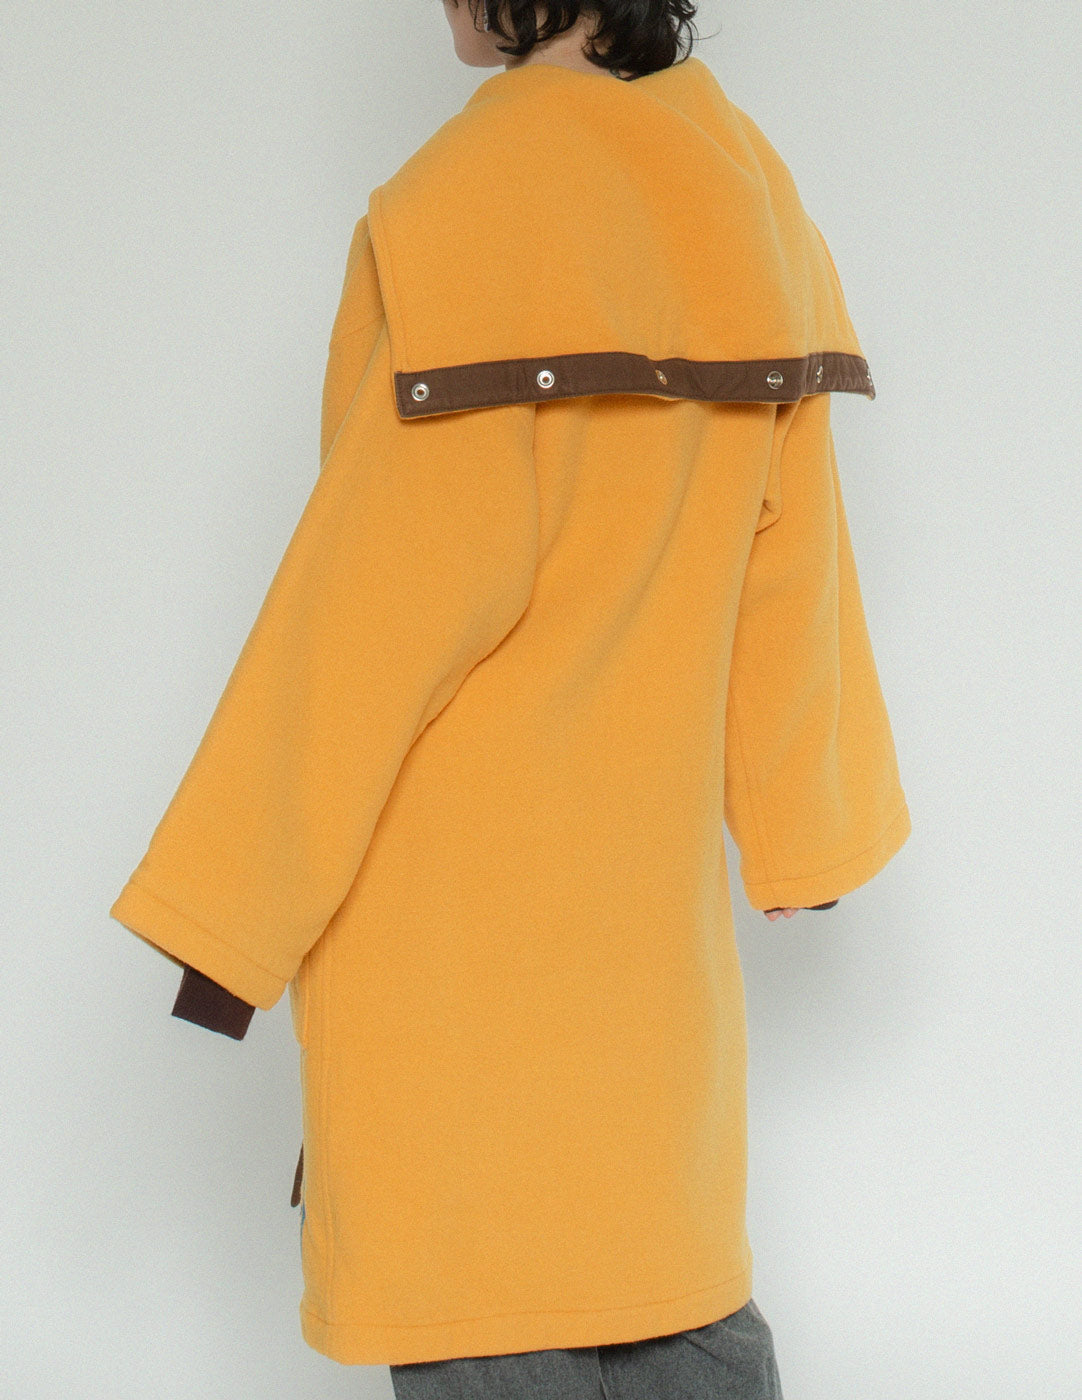 JC de Castelbajac vintage yellow wool robe back detail